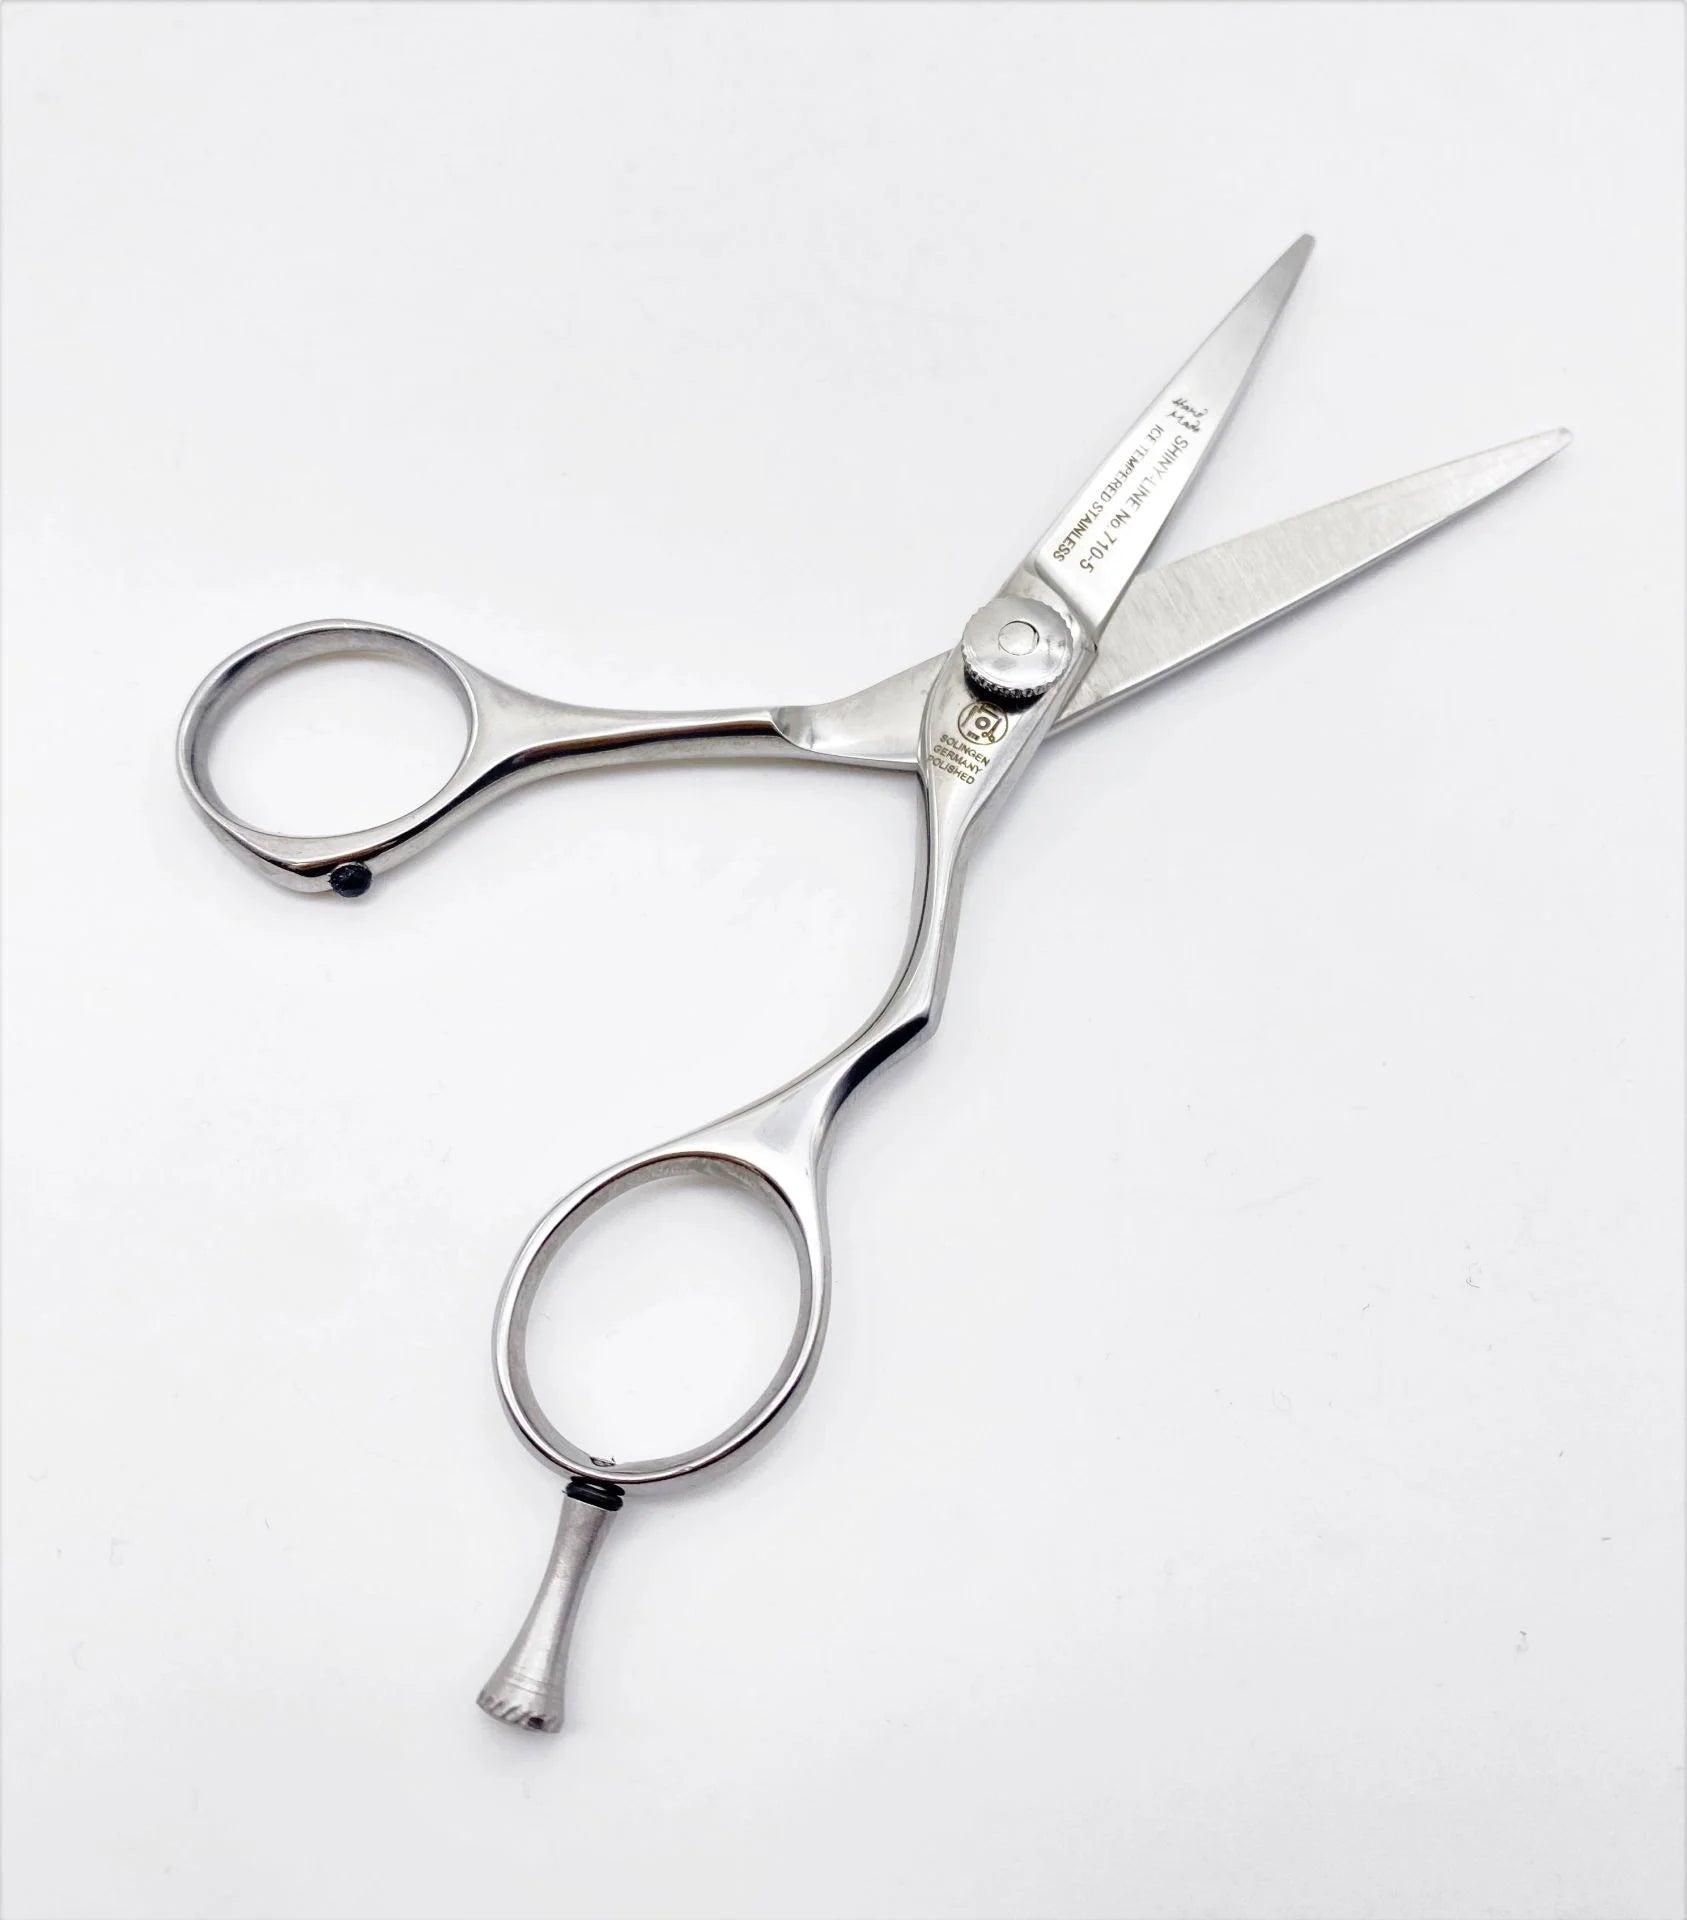 Ciseaux de coiffure Ergo Shiny Line polis, longueur totale 12,7 cm